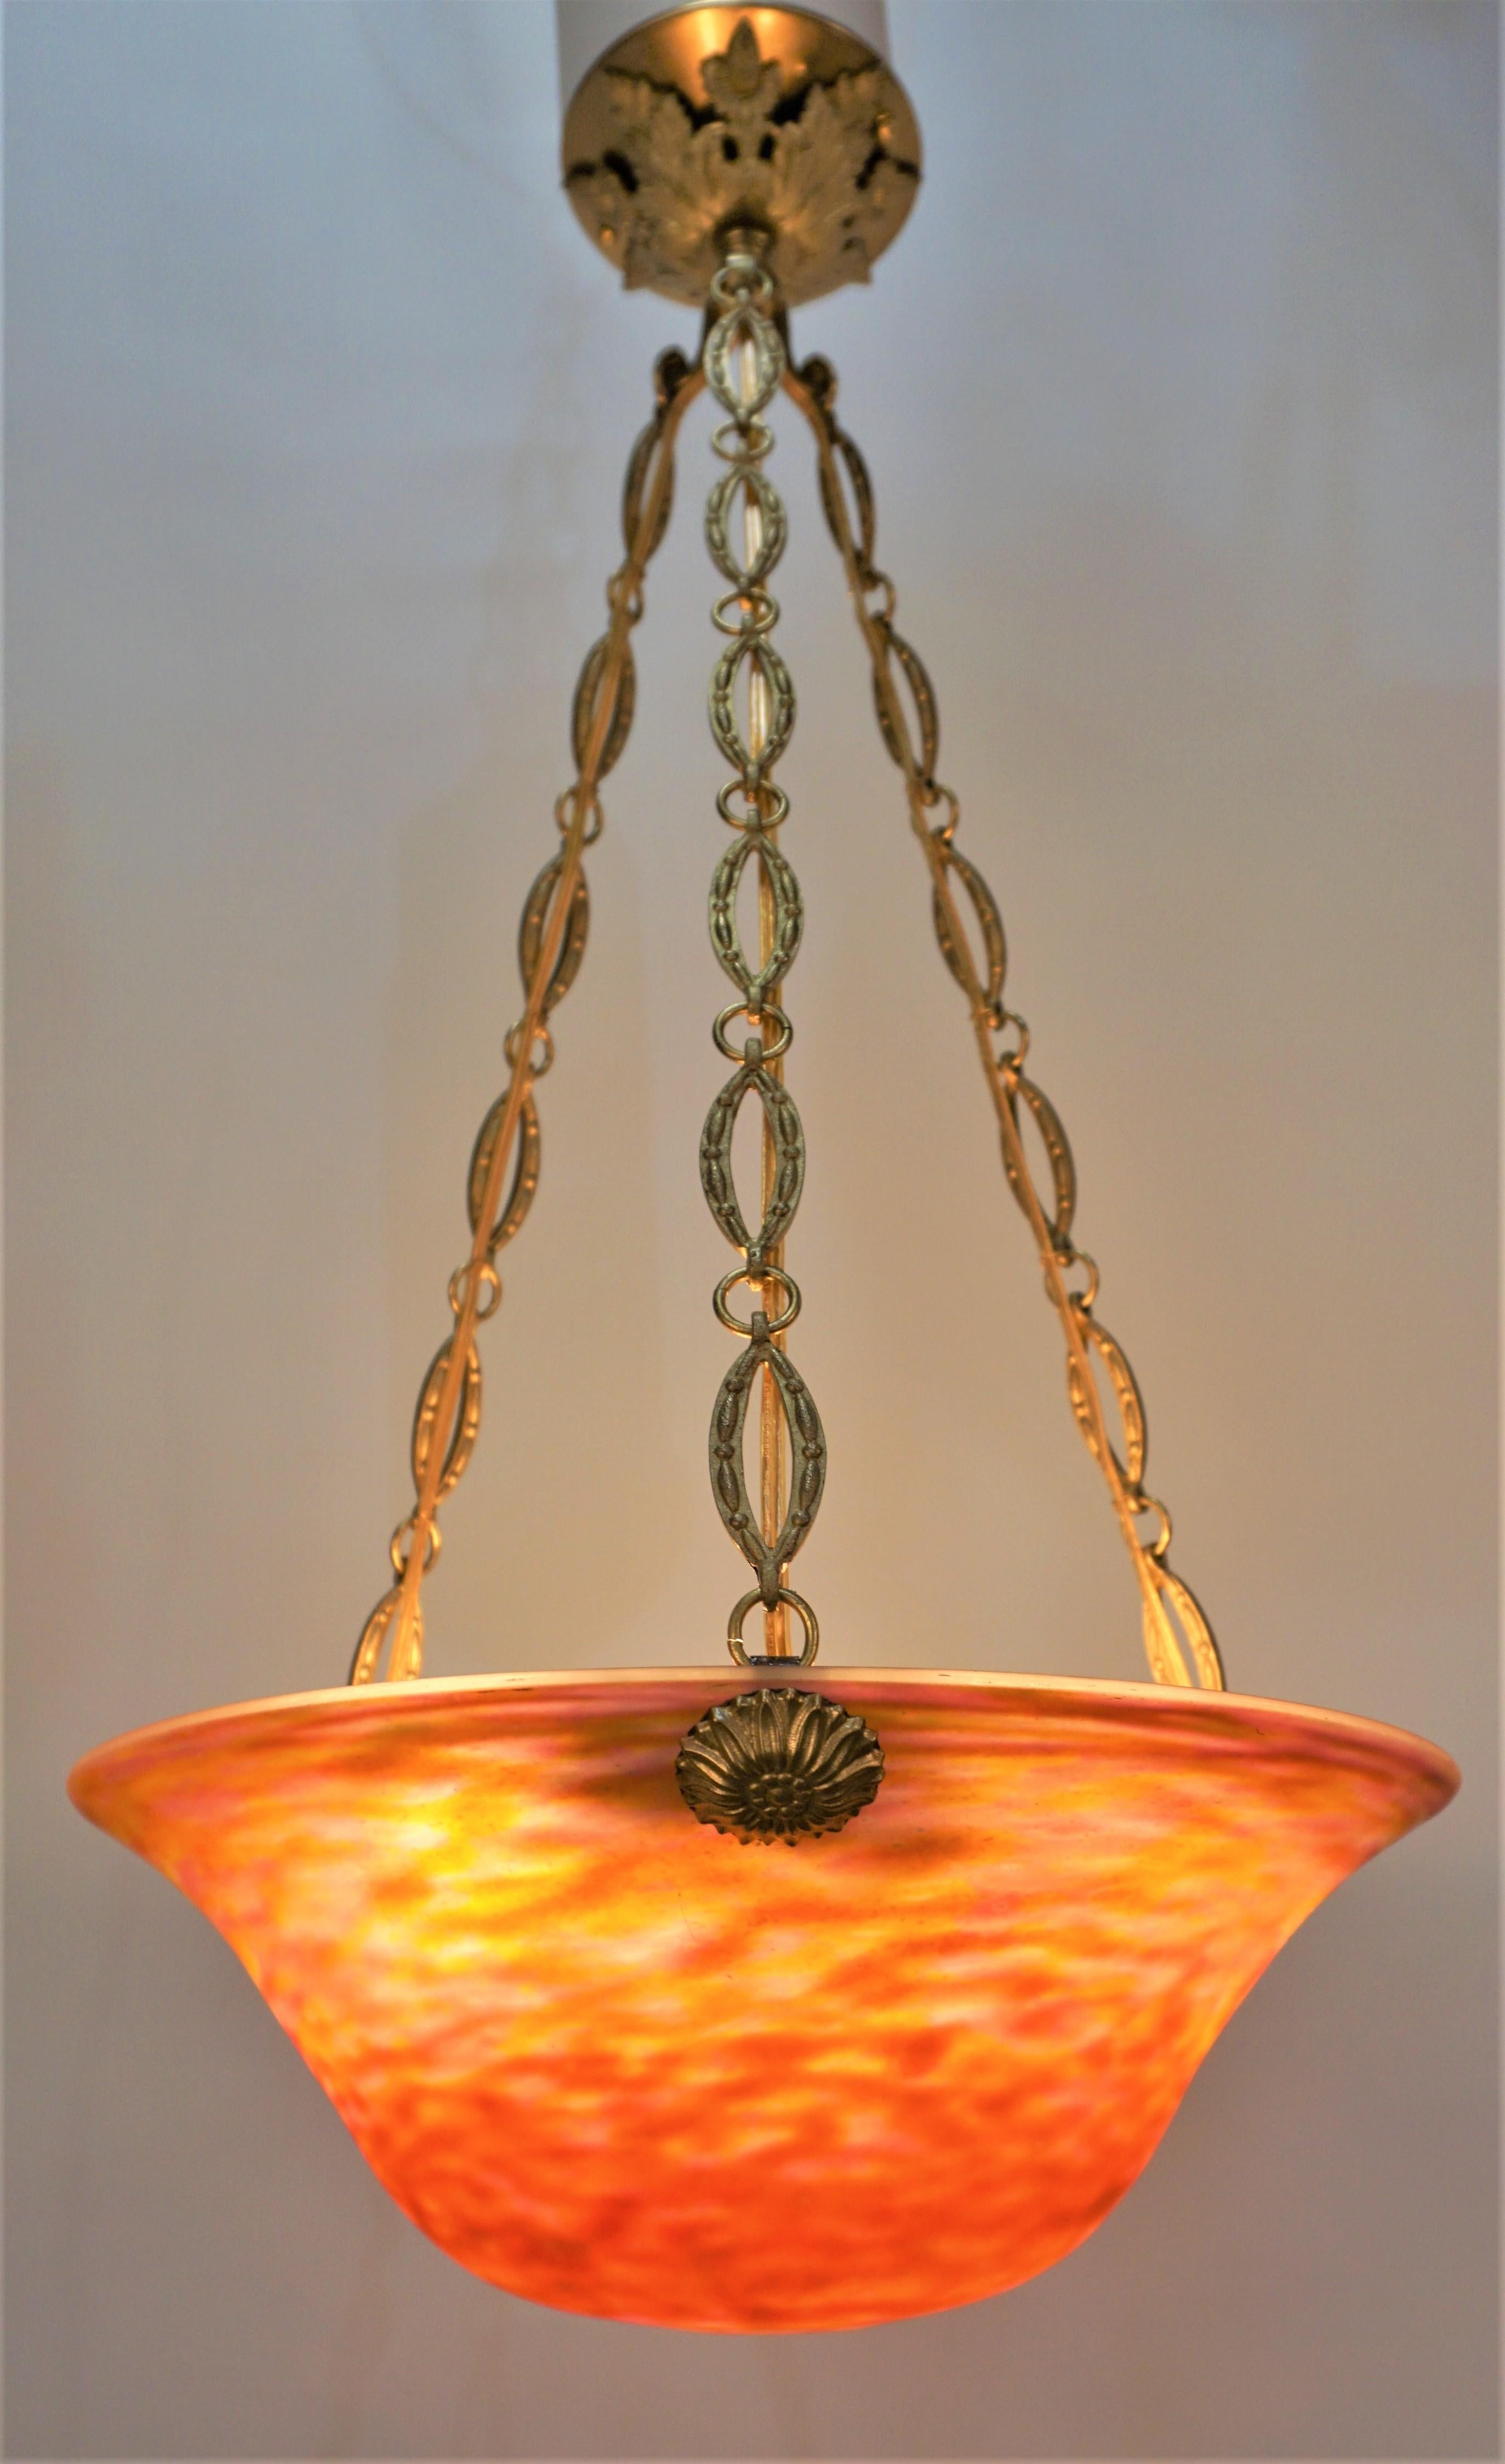 Pendelleuchte aus mundgeblasenem französischem Glas von Daum Nancy, mit eleganter Bronzekette und Baldachin.
Professionell neu verkabelt und einbaufertig.
Sechs Leuchten mit je 60 Watt.
